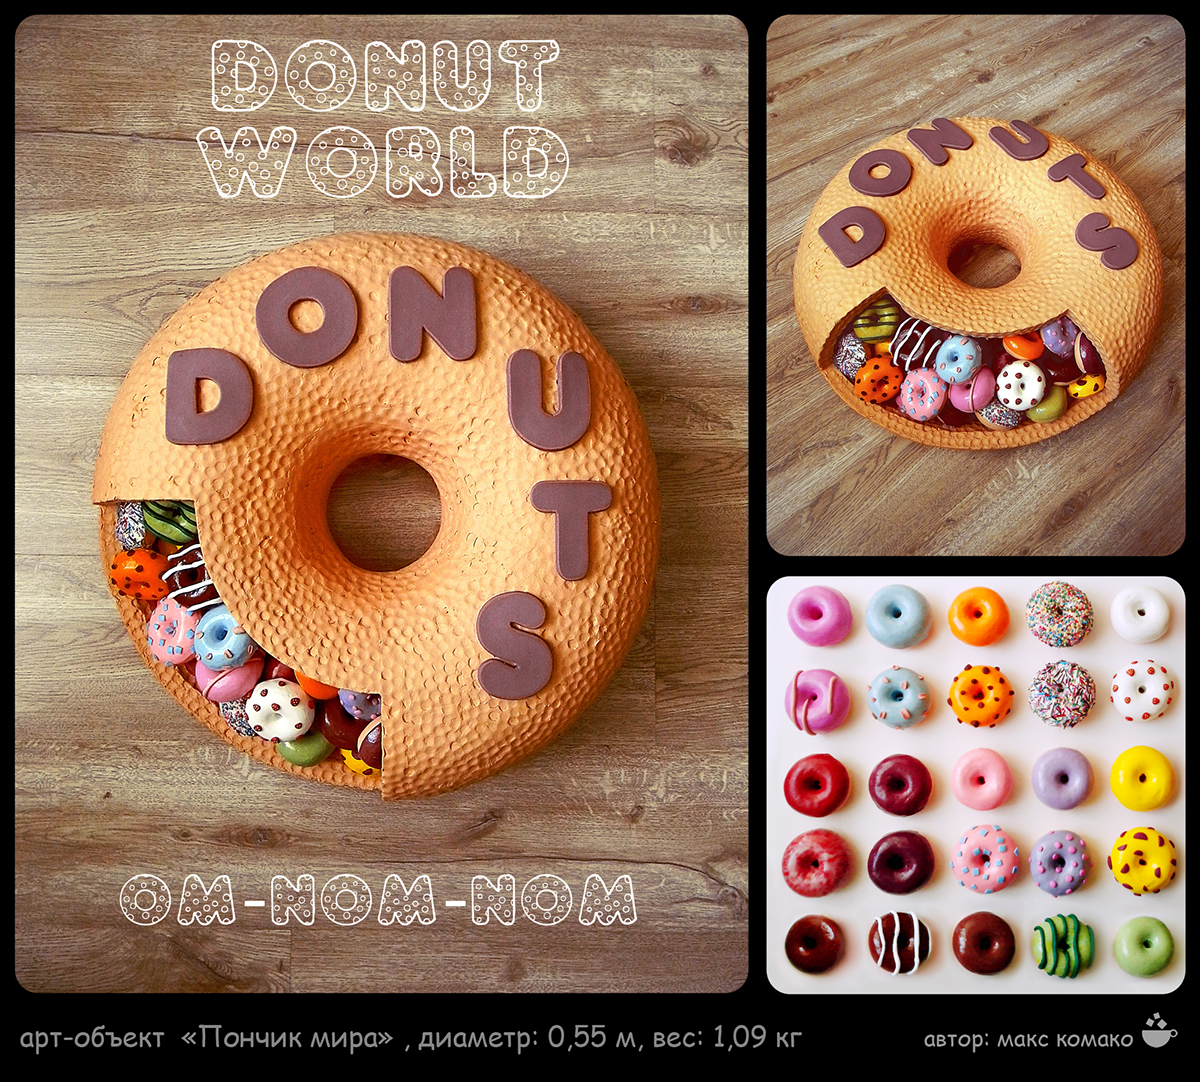 donut world Candy yammy sugar max_komako art object